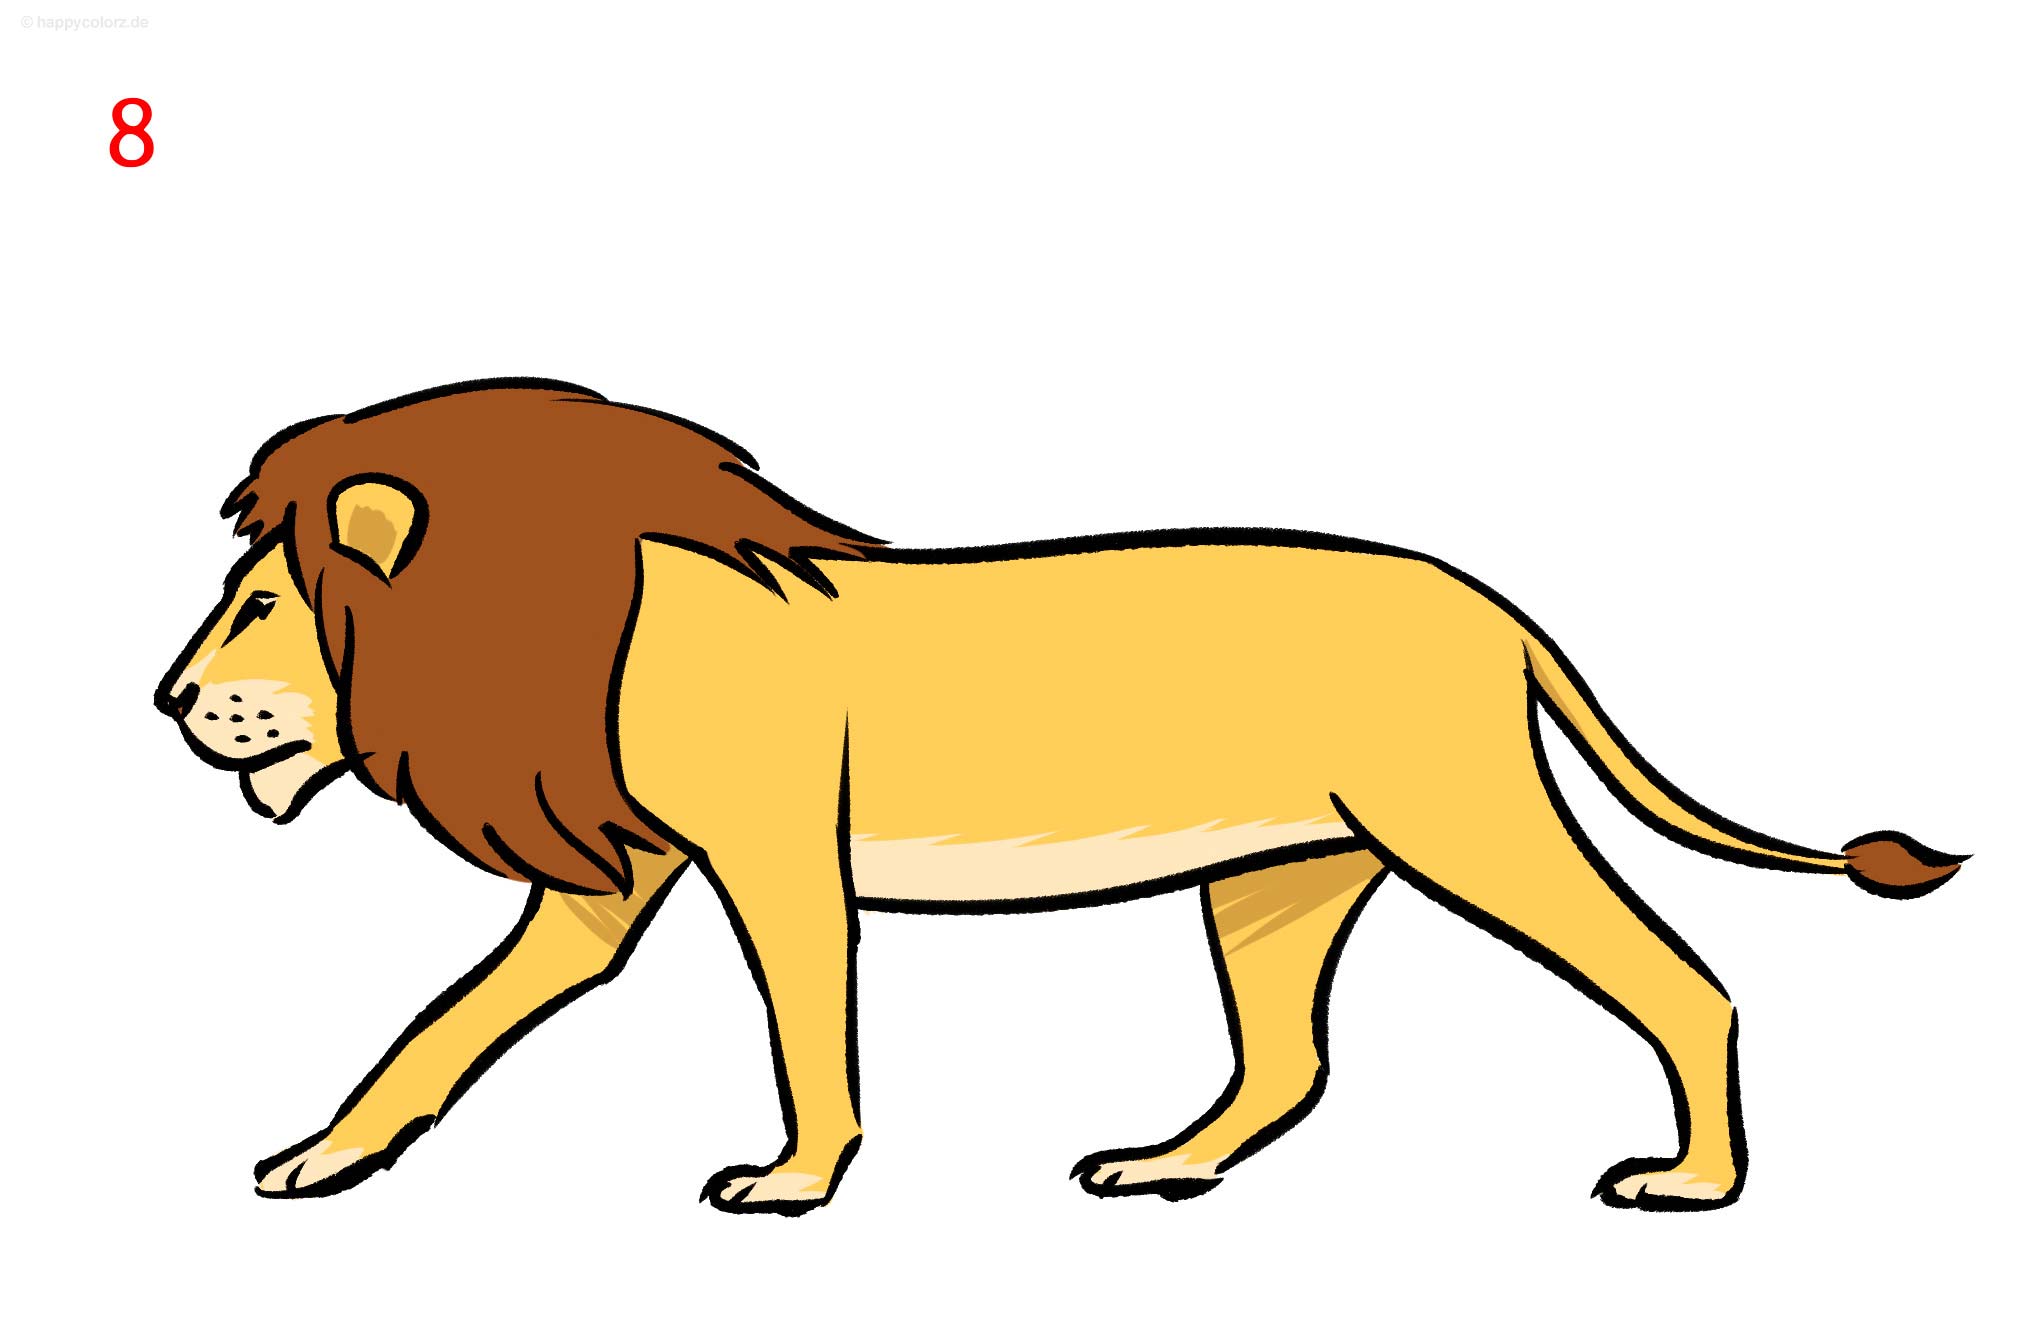 Löwe zeichnen - Schritt für Schritt